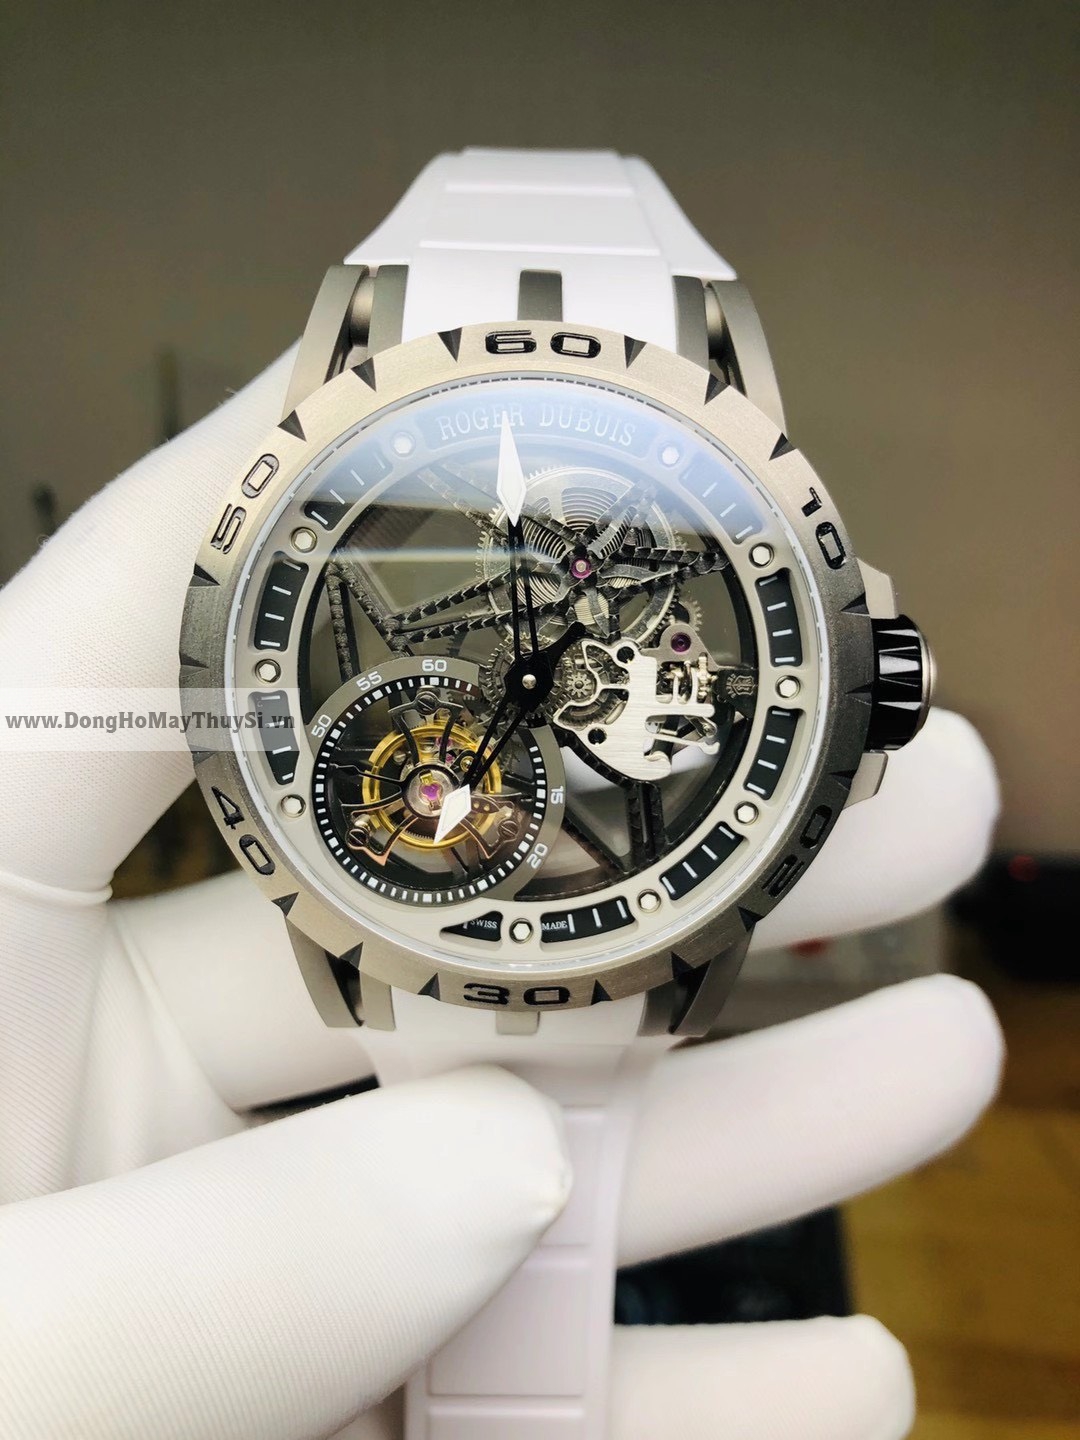 Đồng hồ Roger Dubuis fake giá rẻ nên chọn loại nào